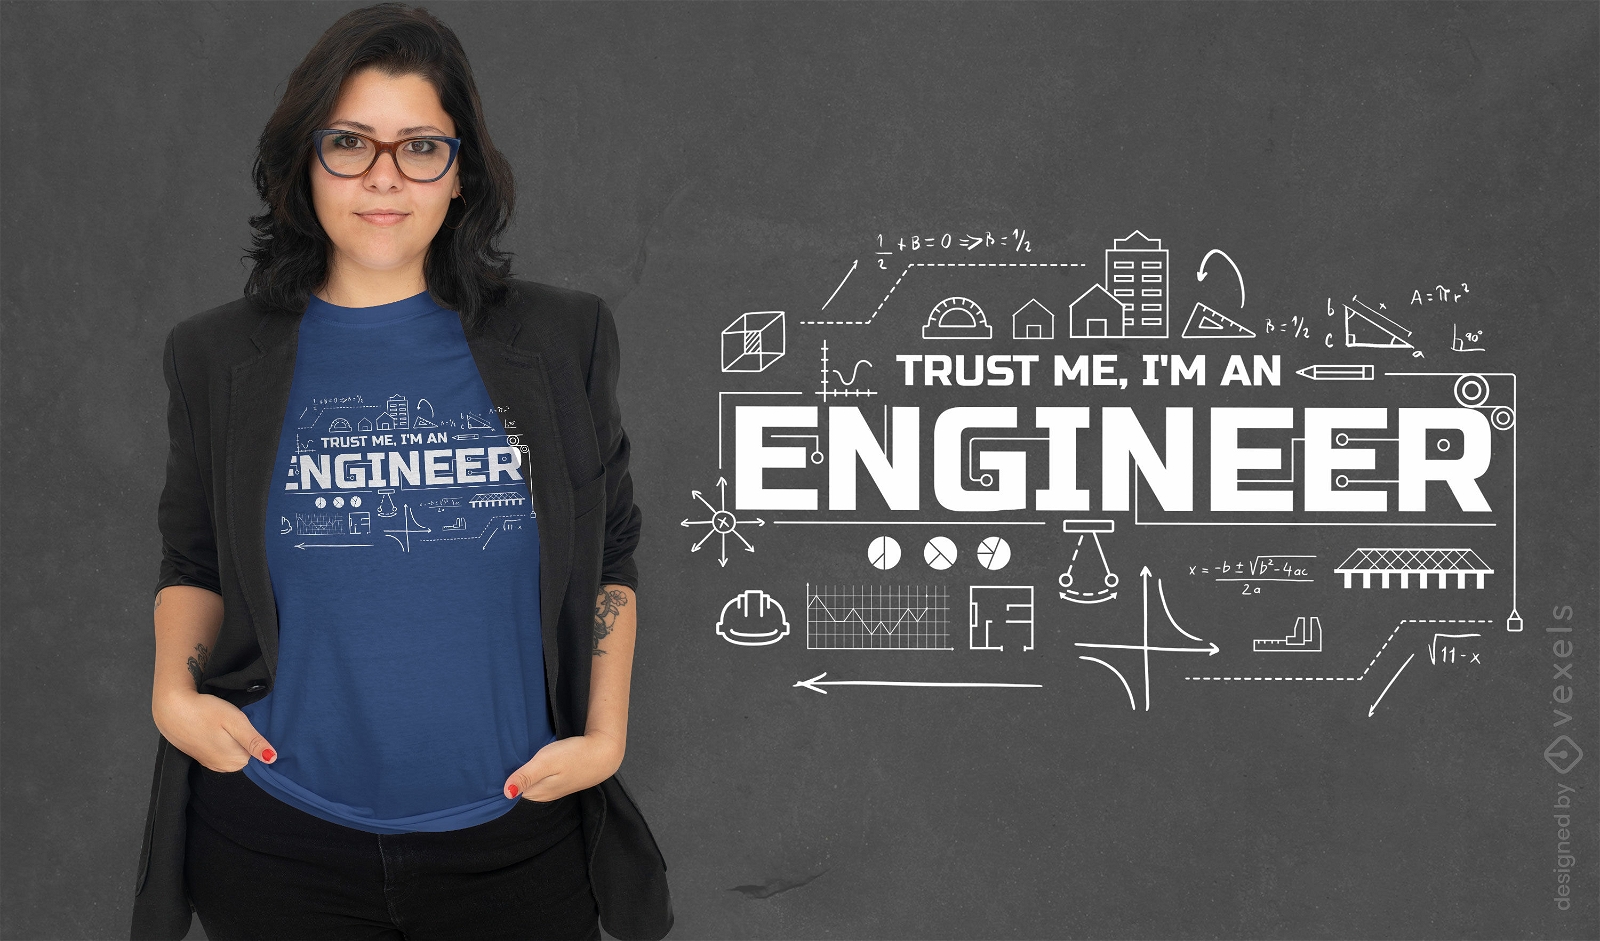 Trust me, I'm an engineer t-shirt design